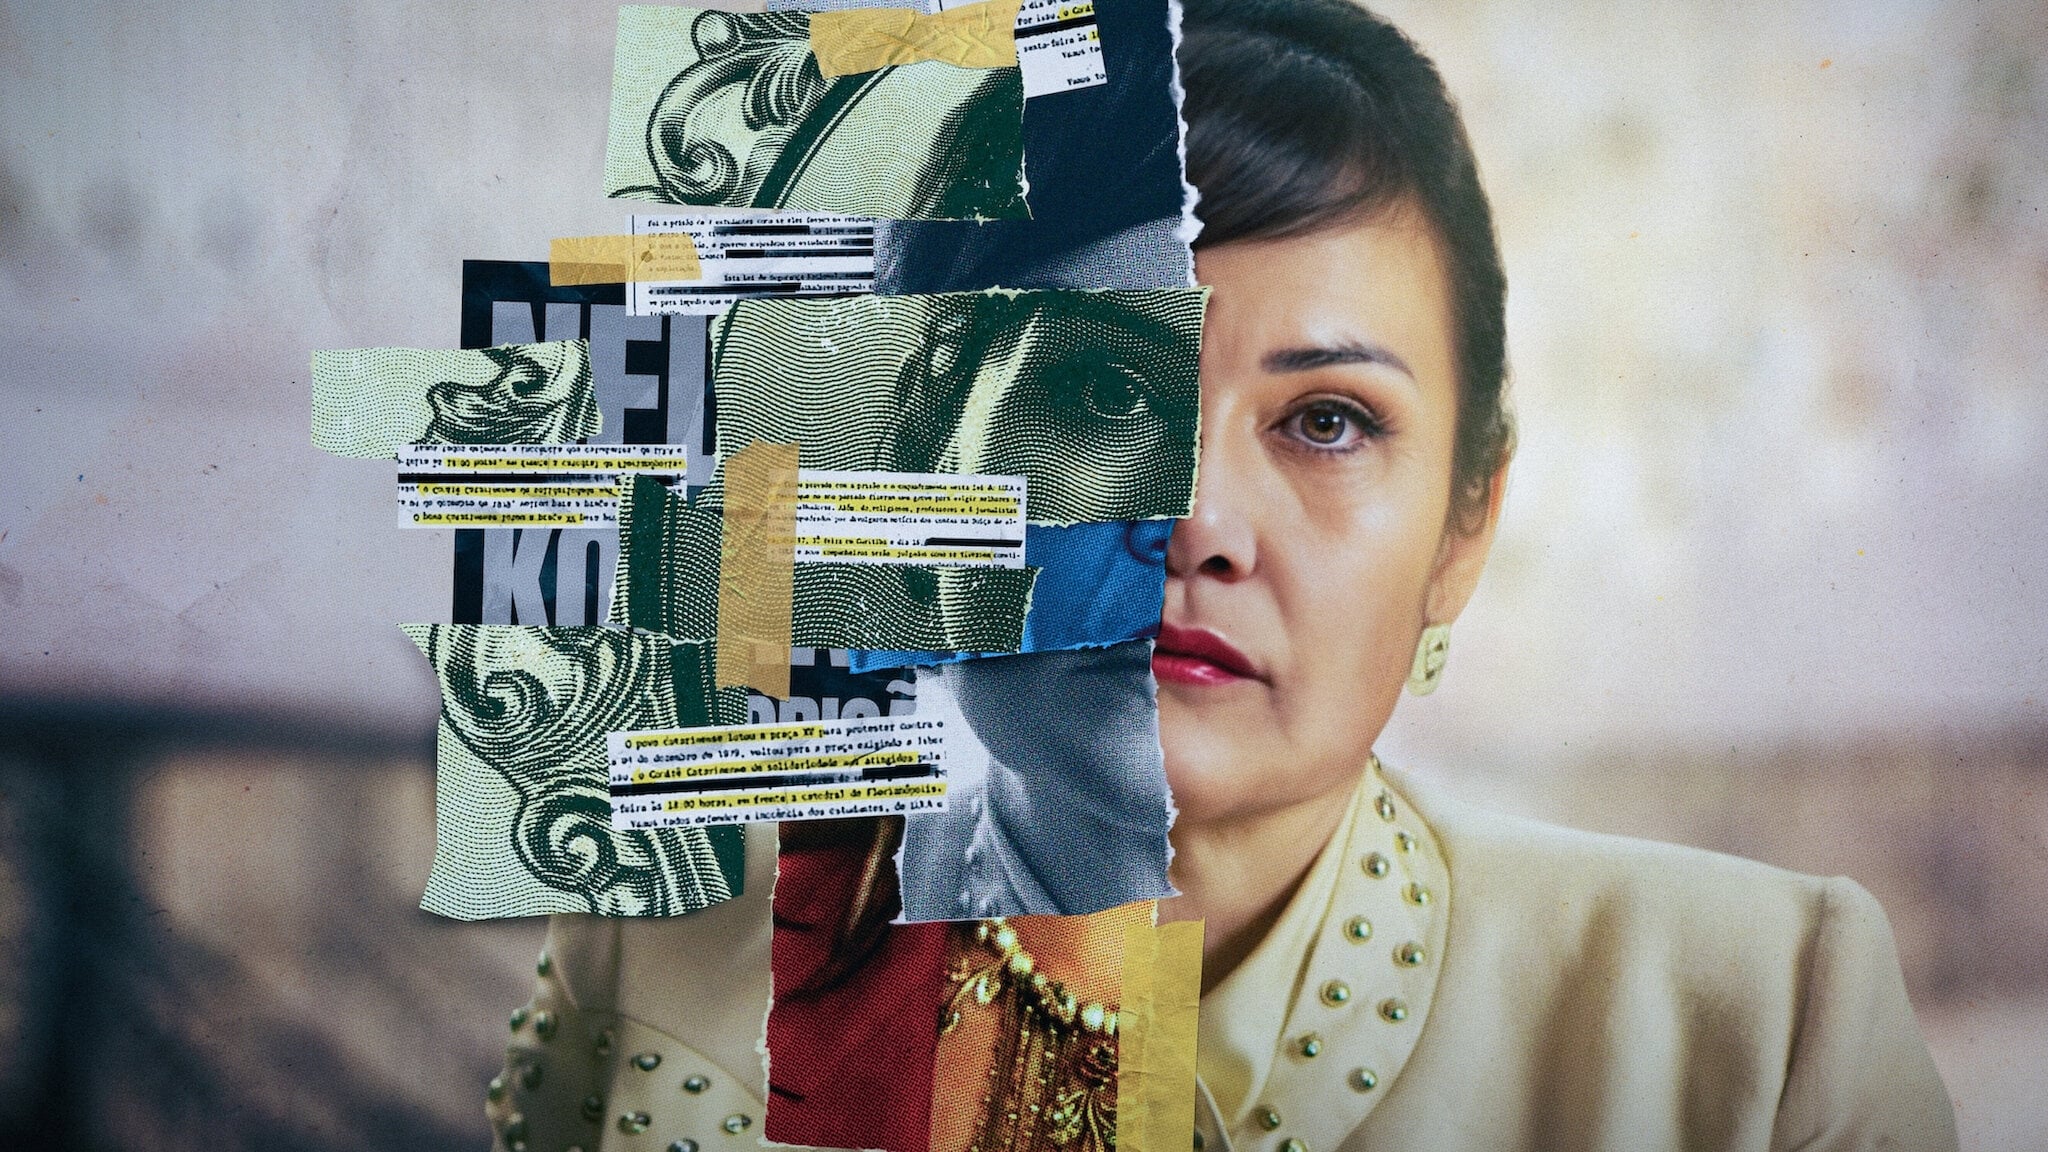 Poster Phim Bà Hoàng tiền Bẩn (Nelma Kodama The Queen of Dirty Money)